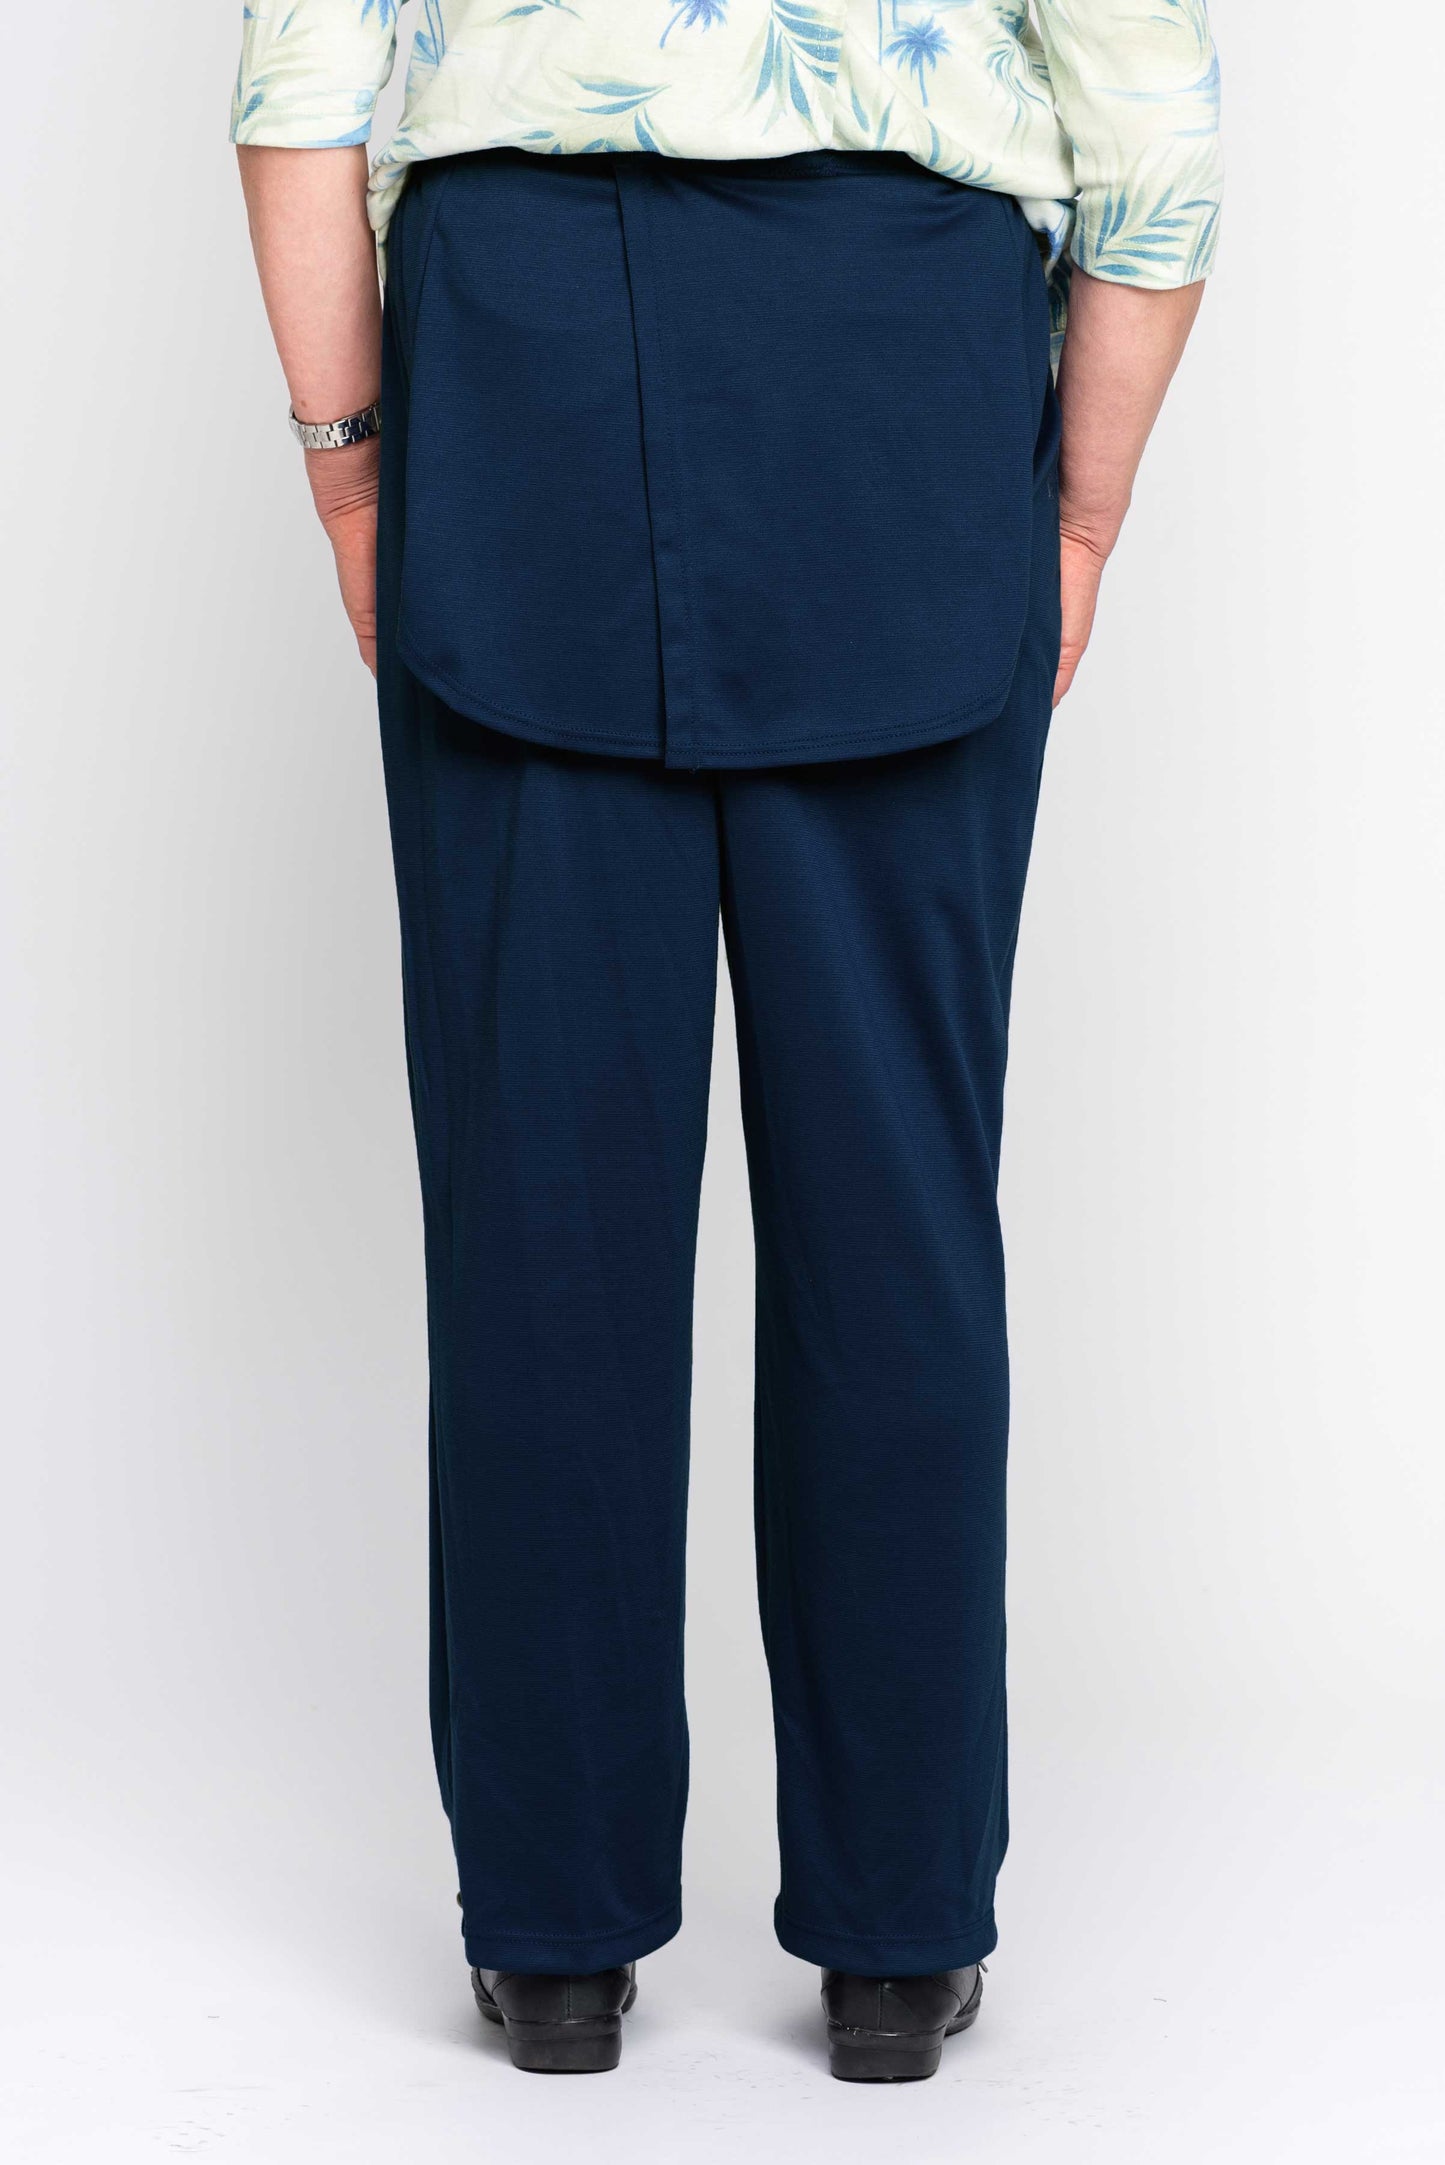 Pantalon marine sans fond avec panneaux d'intimité en jersey pour dame | Modèle 1LP35 | CCV